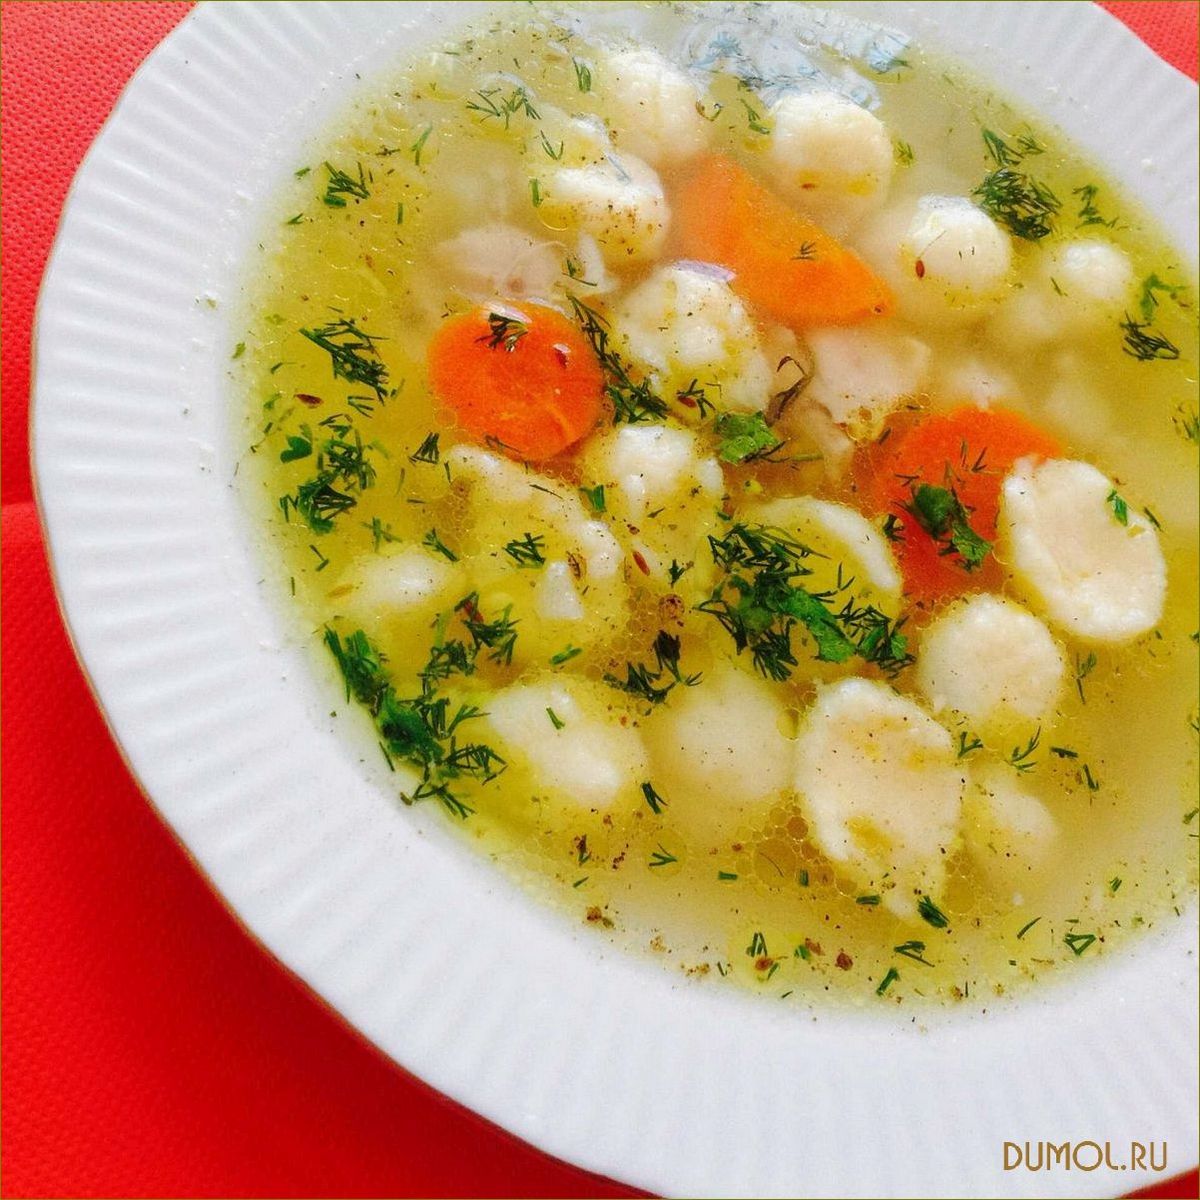 Рецепт супа с картофельными клецками